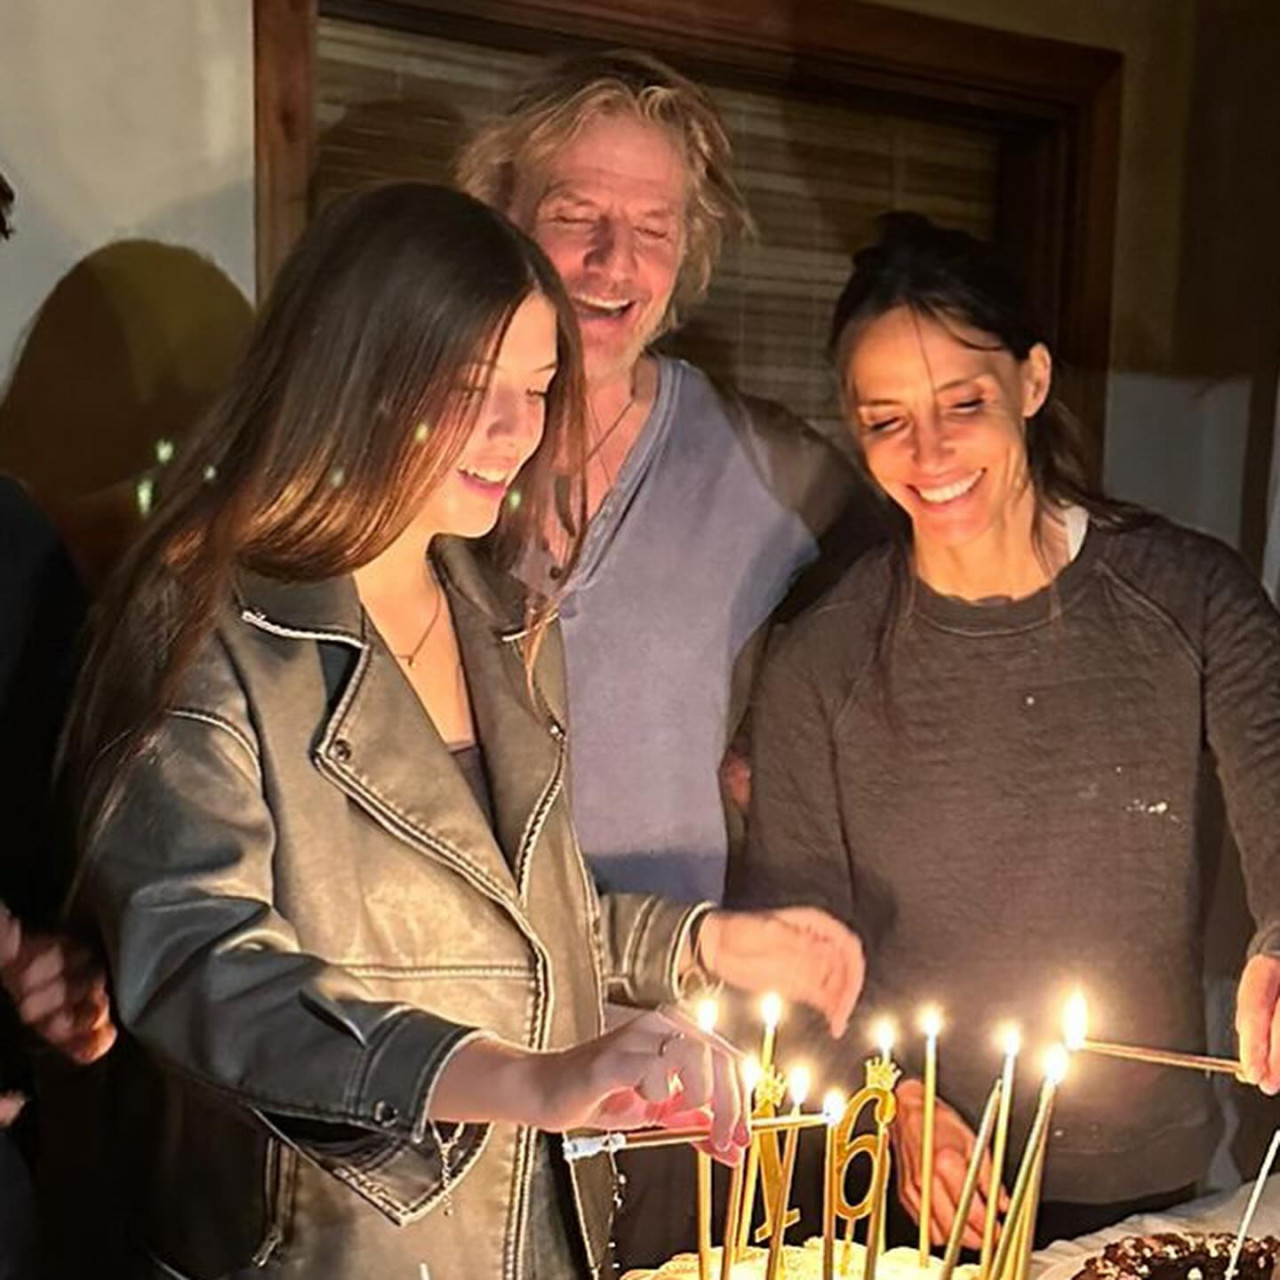 India junto a sus padres festejando su cumpleaños. Foto: Instagram.